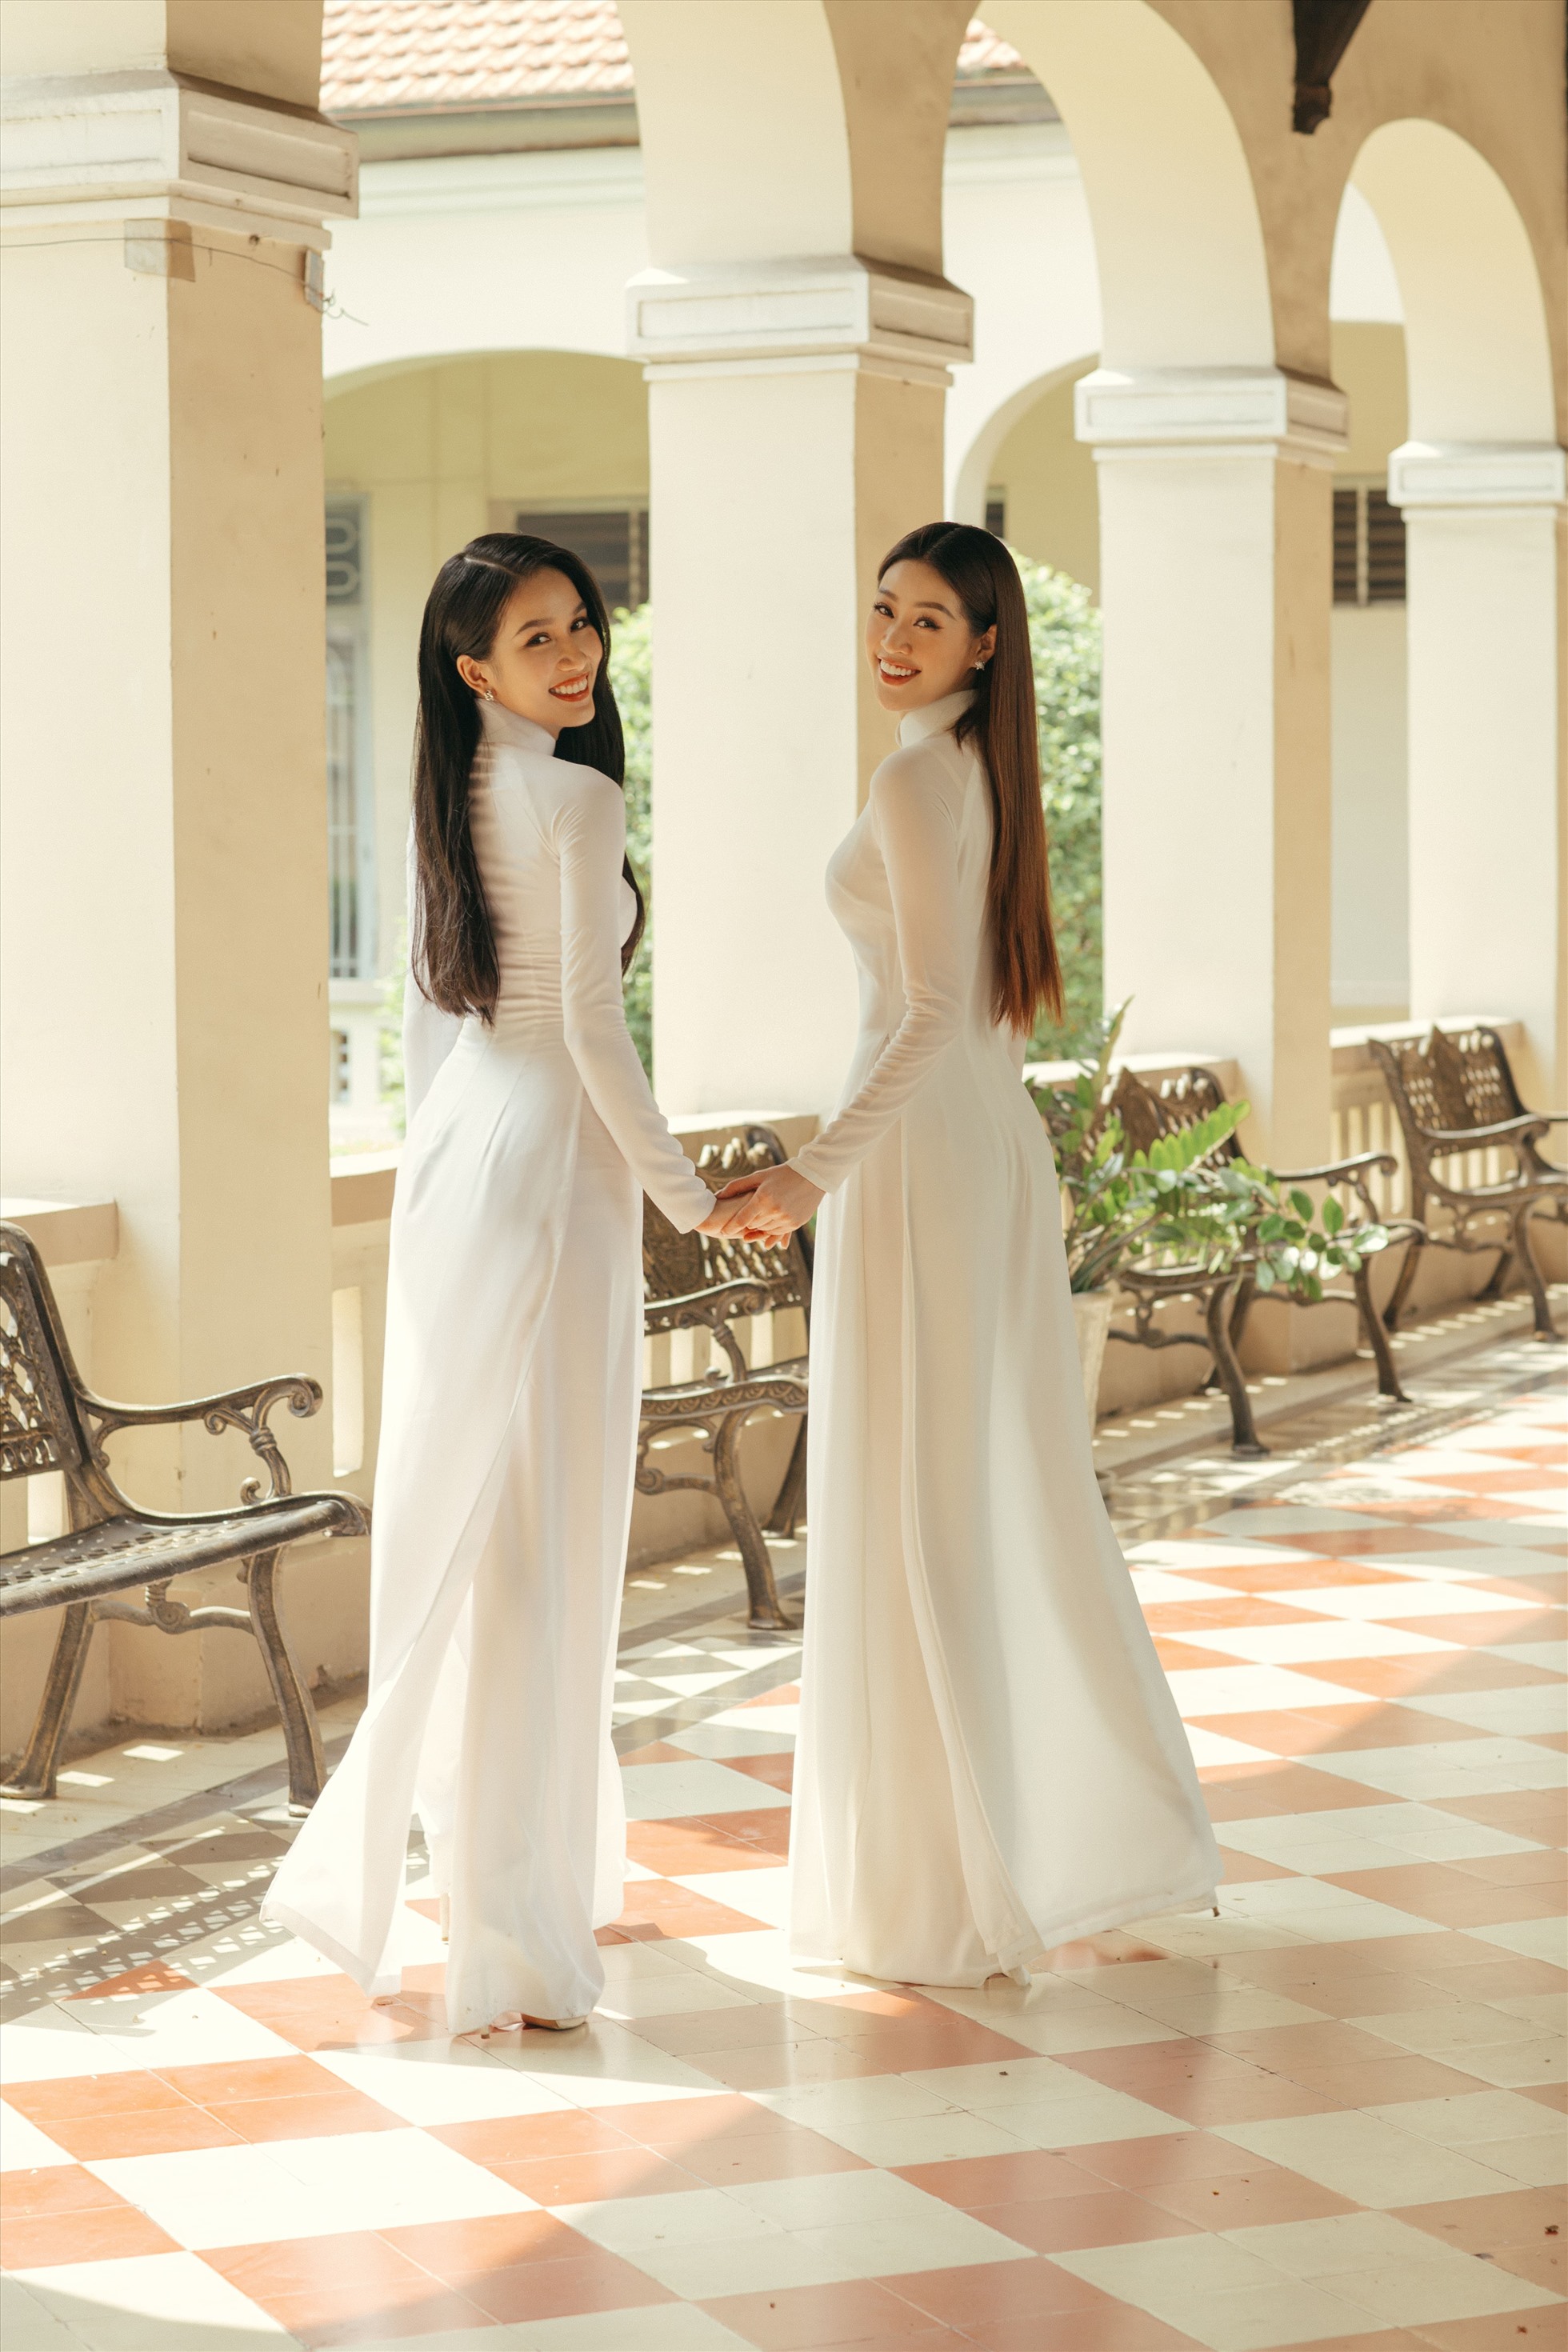 Trong tà áo dài trắng, Hoa hậu Khánh Vân và Á hậu Phương Anh trở lại là những cô học sinh, dạo bước trên sân trường. Ảnh: Hoàng Thảo.